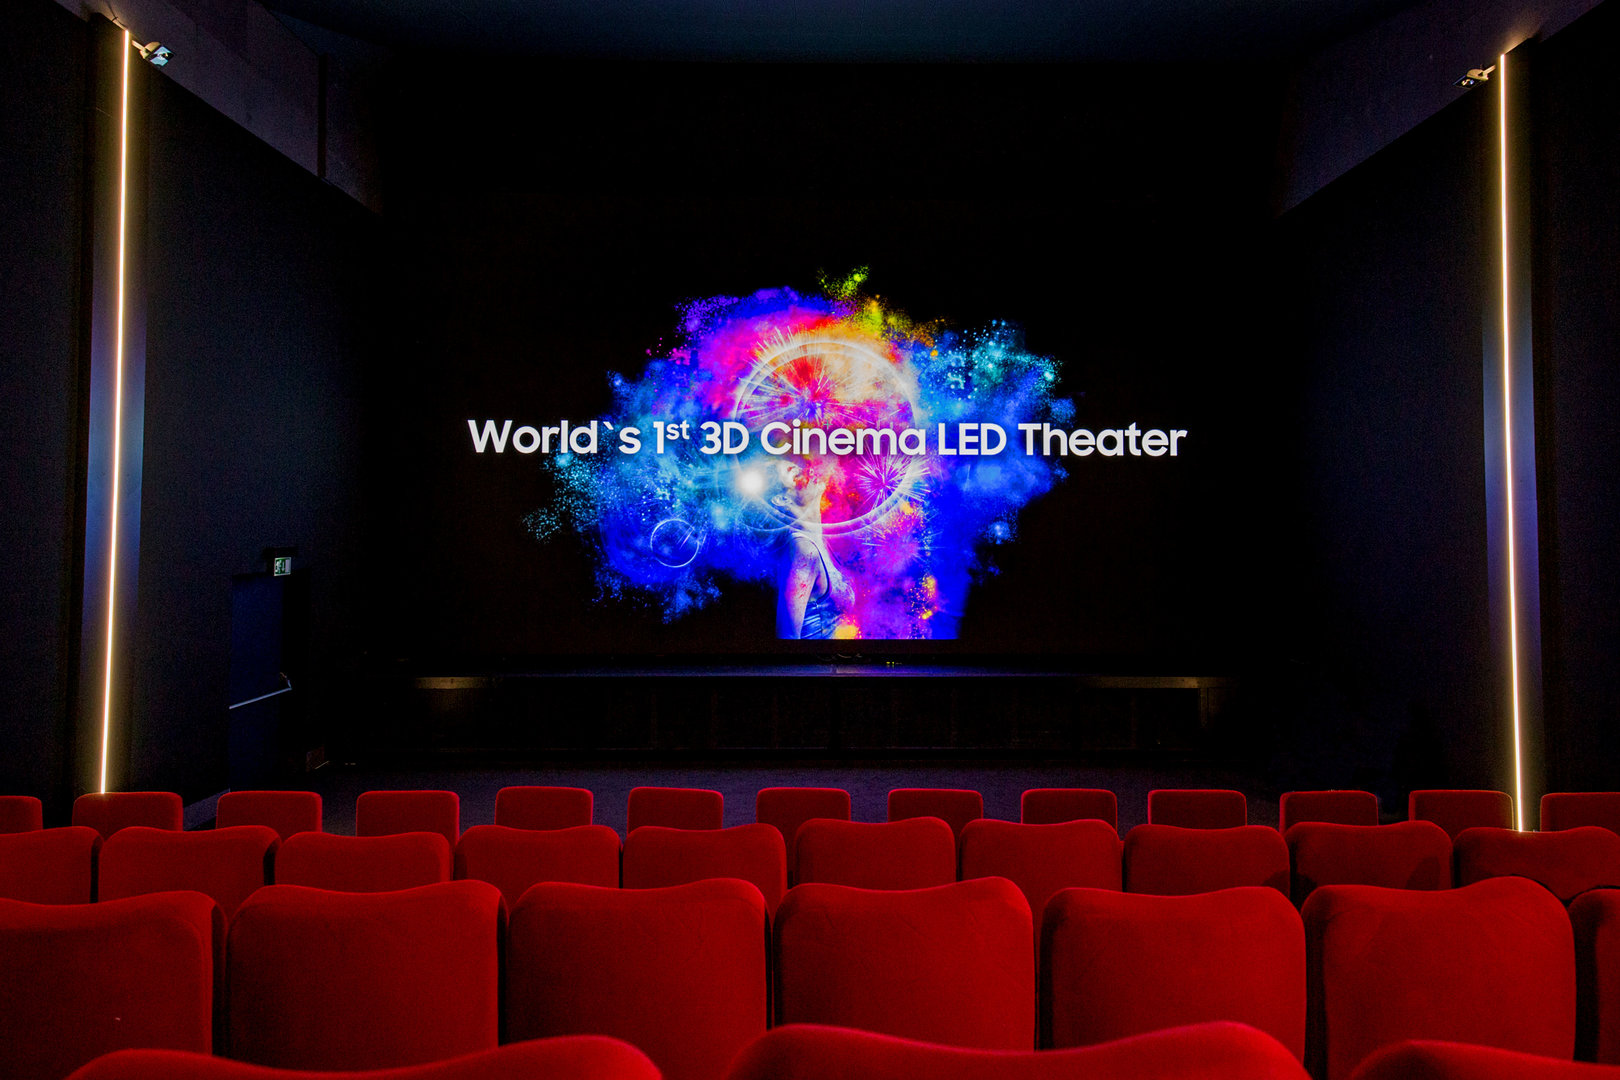 Samsung Cinema LED in Zürich